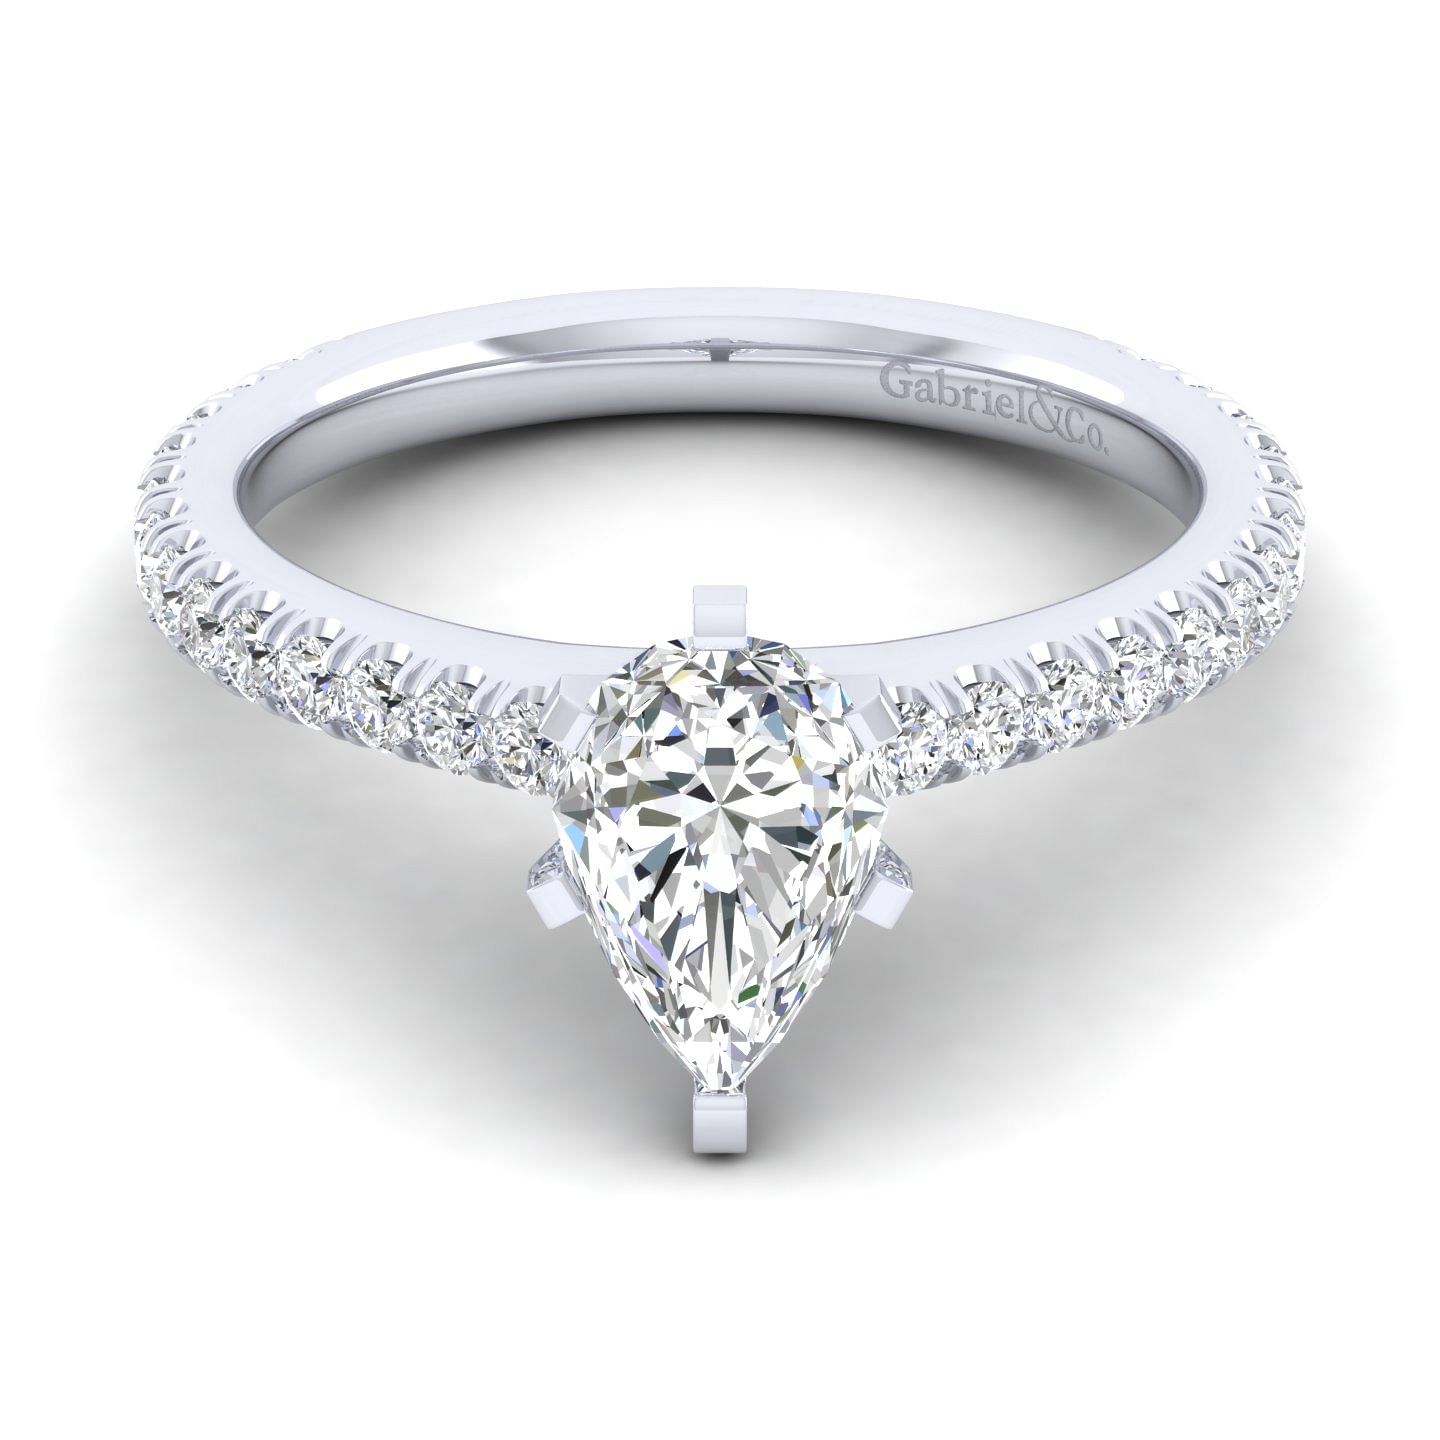 Sloane - 14K White Gold Pear Shape Diamond Engagement Ring